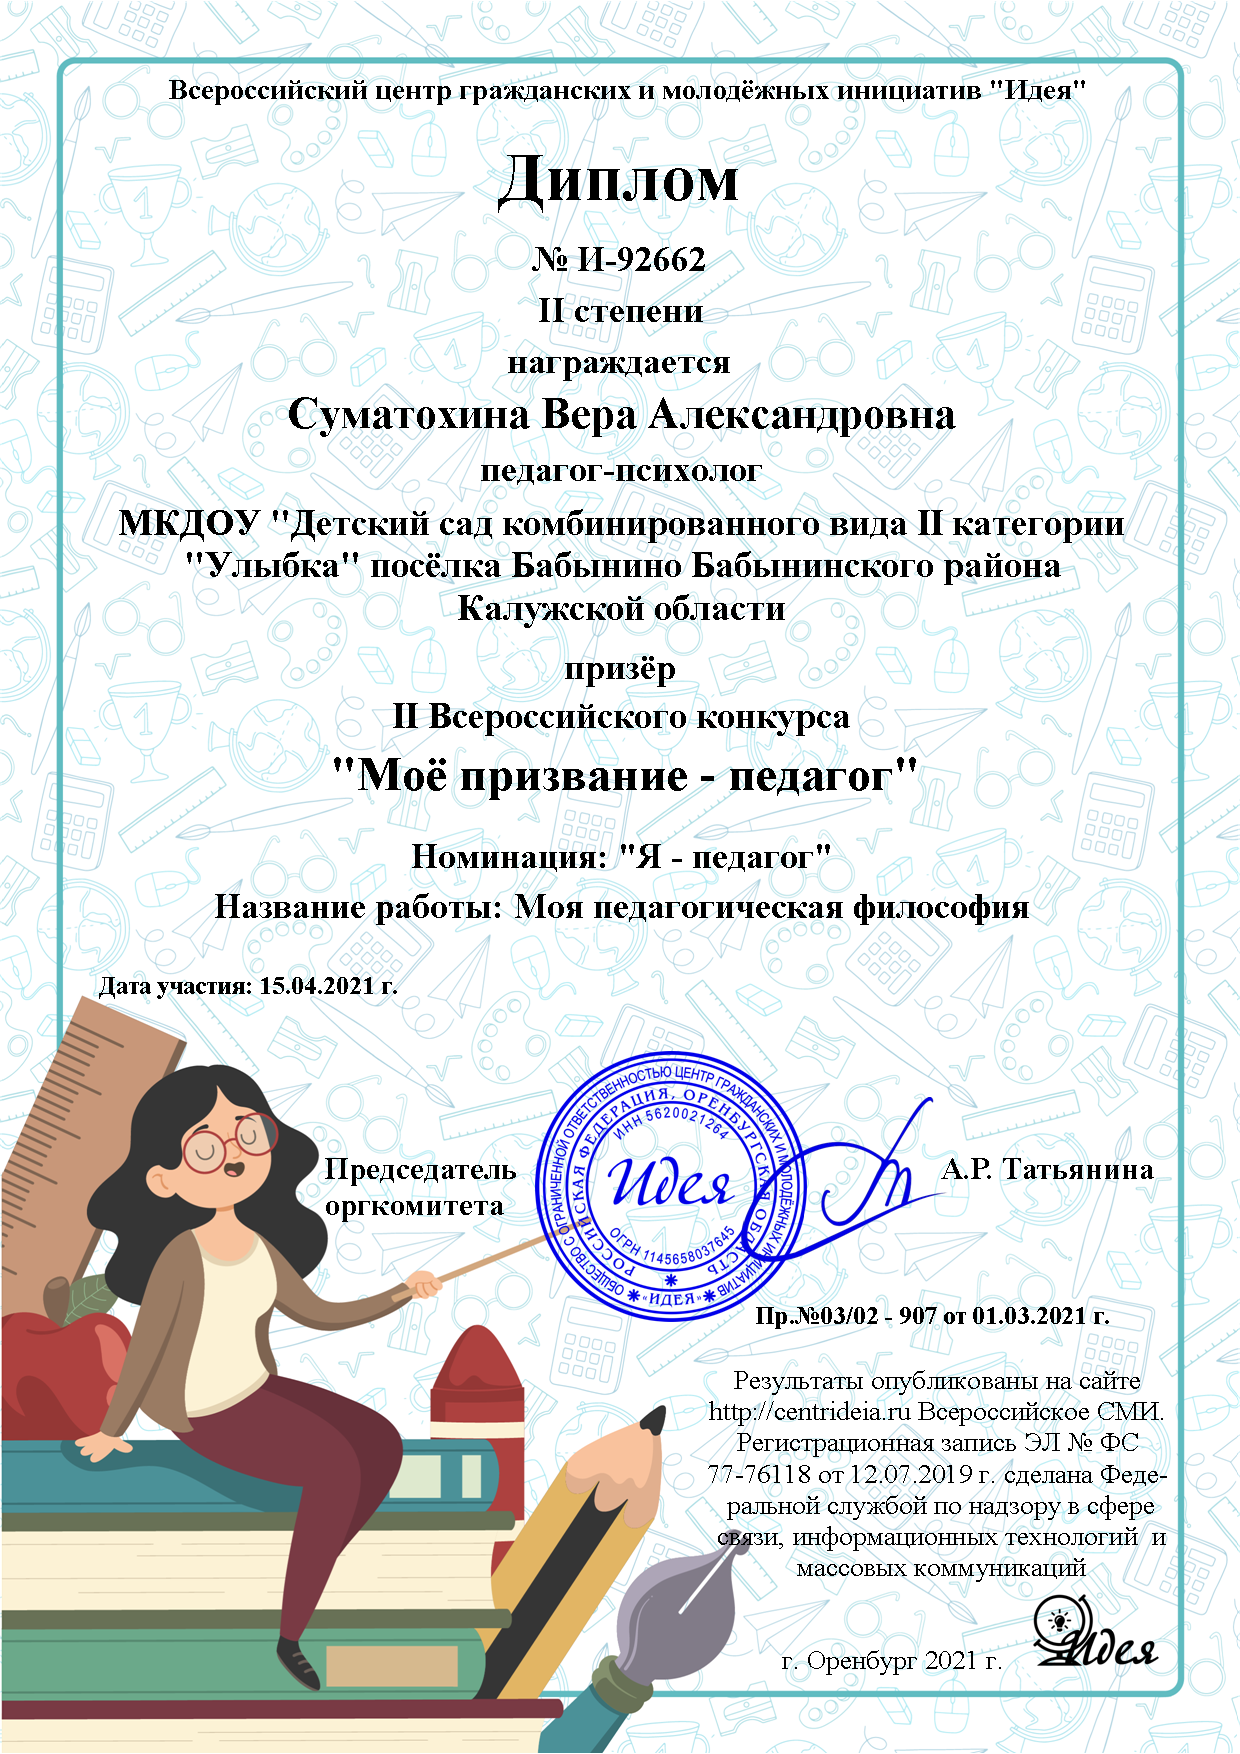 Диплом 2 степени Всероссийского конкурса "Мое призвание - педагог"